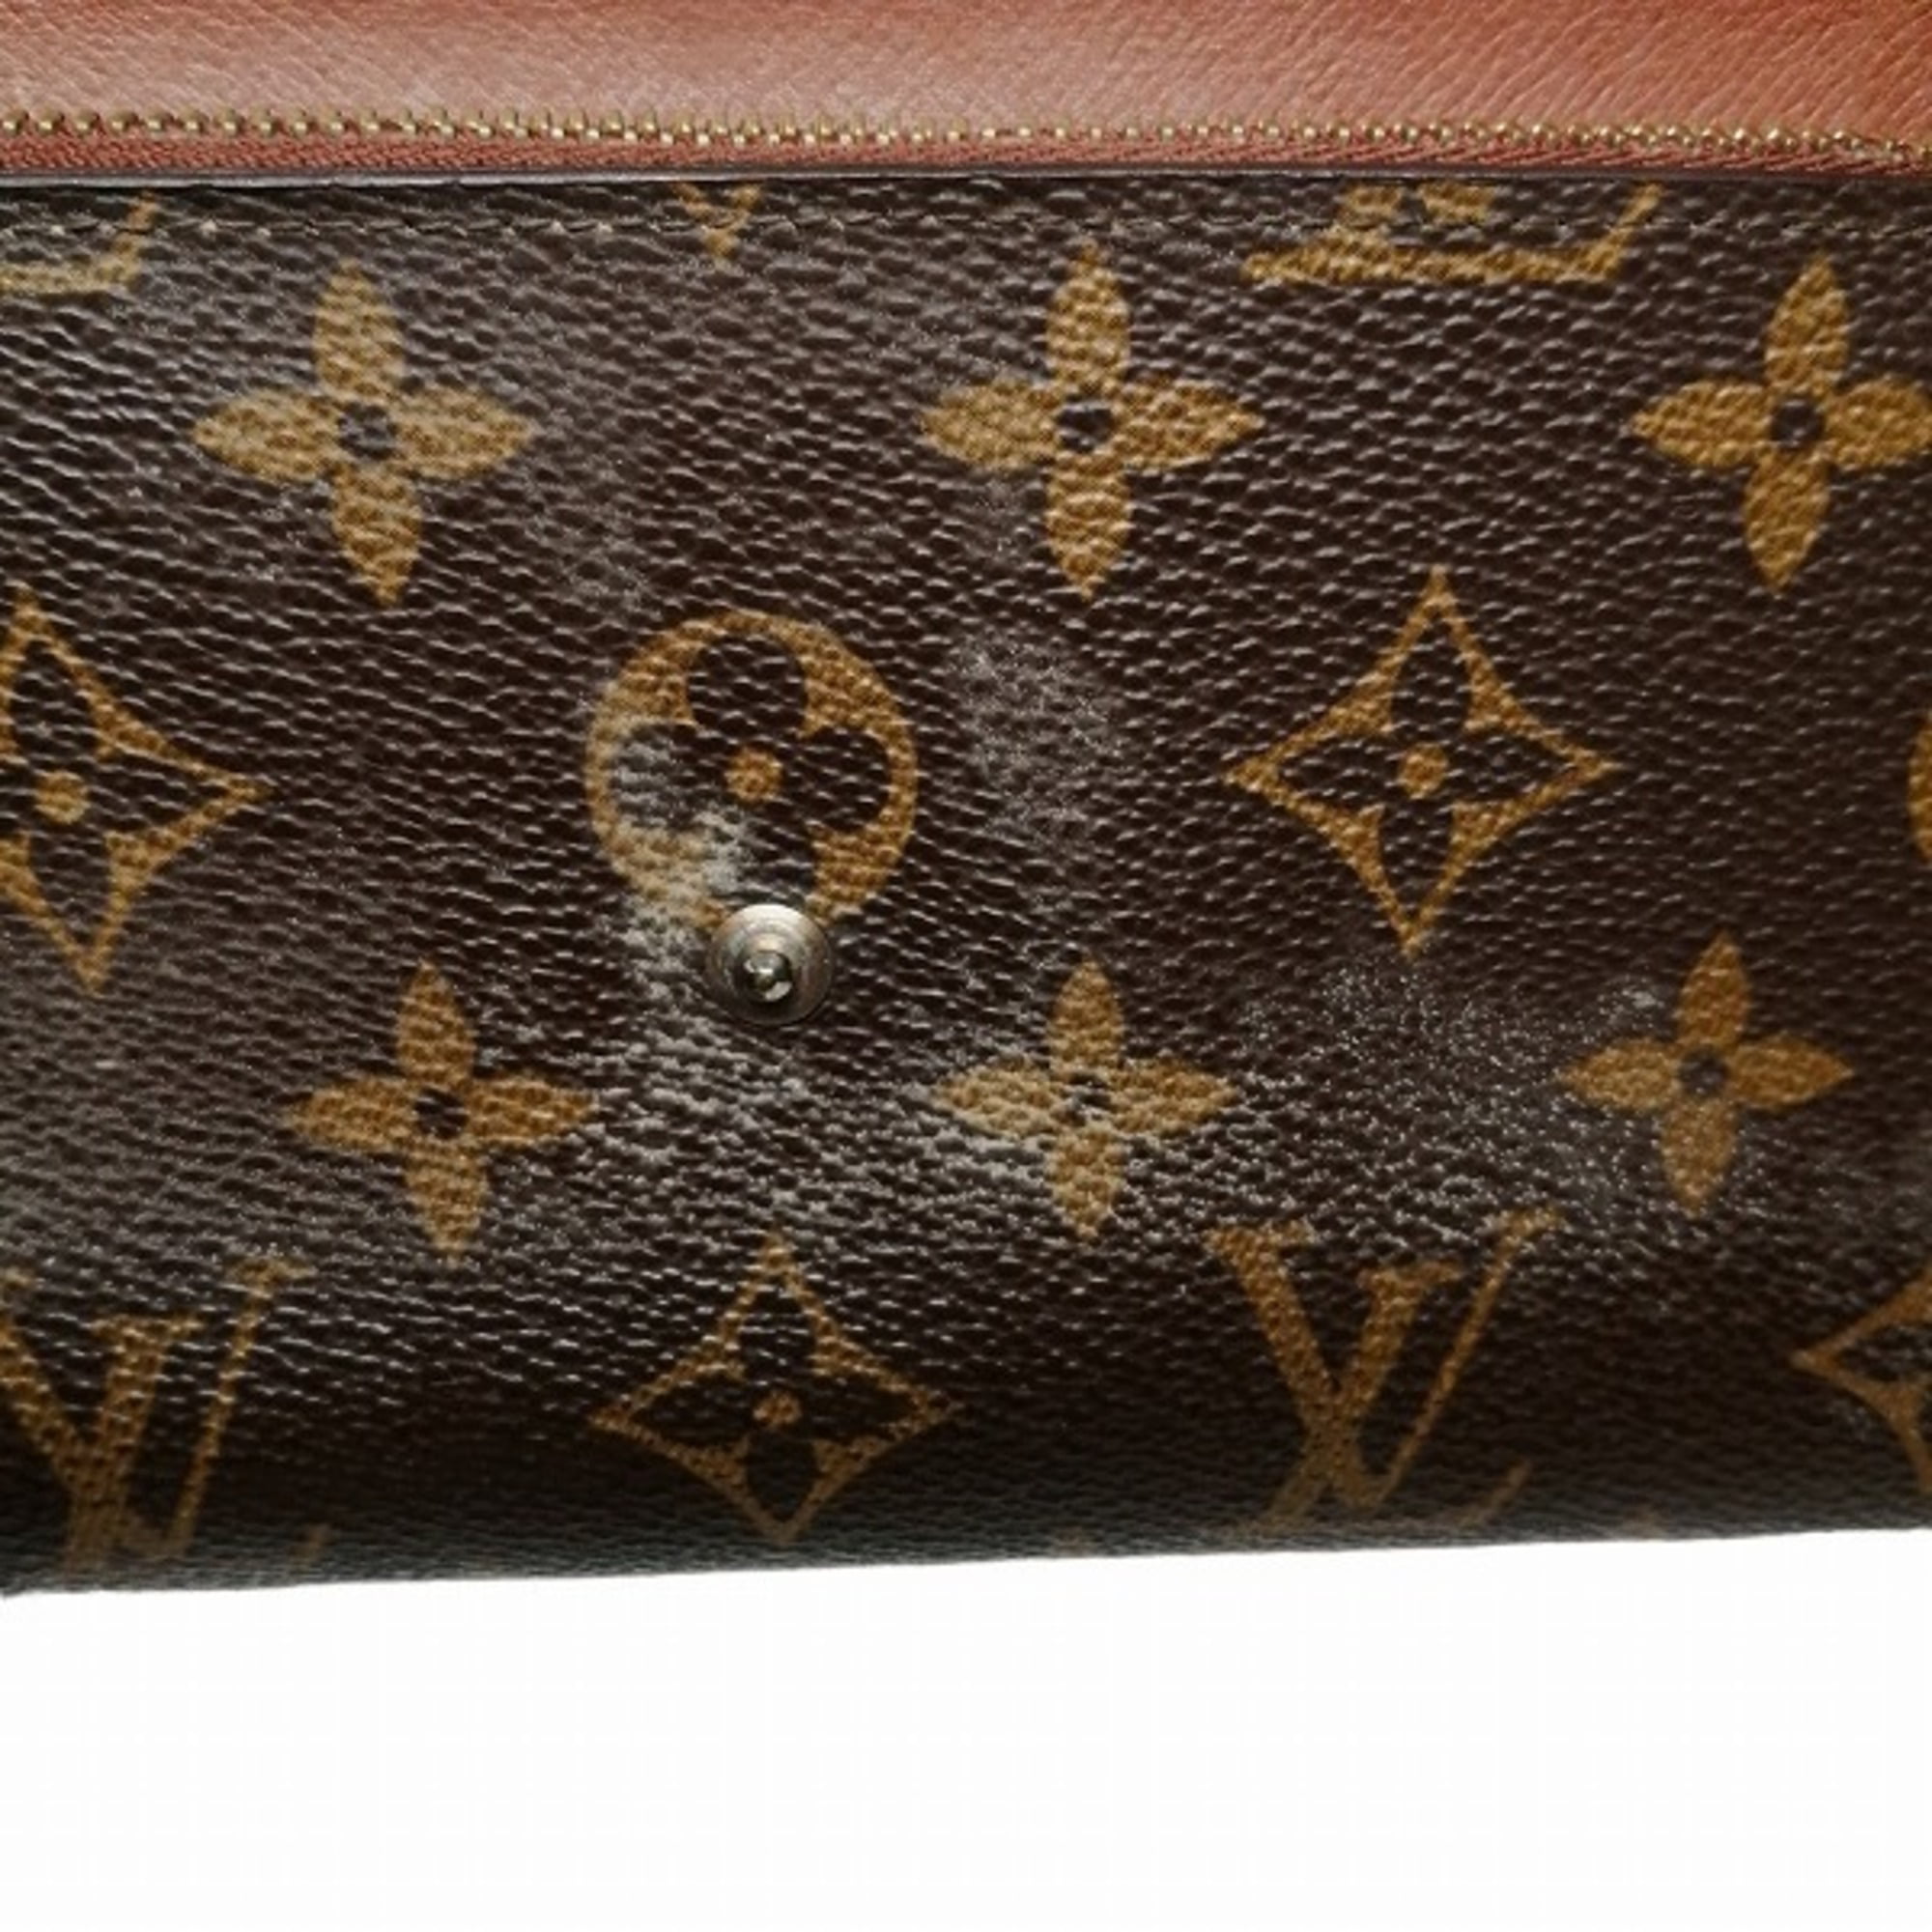 Authenticated Used Louis Vuitton Monogram Pochette Portumone Credit M61725  Long Wallet Unisex 